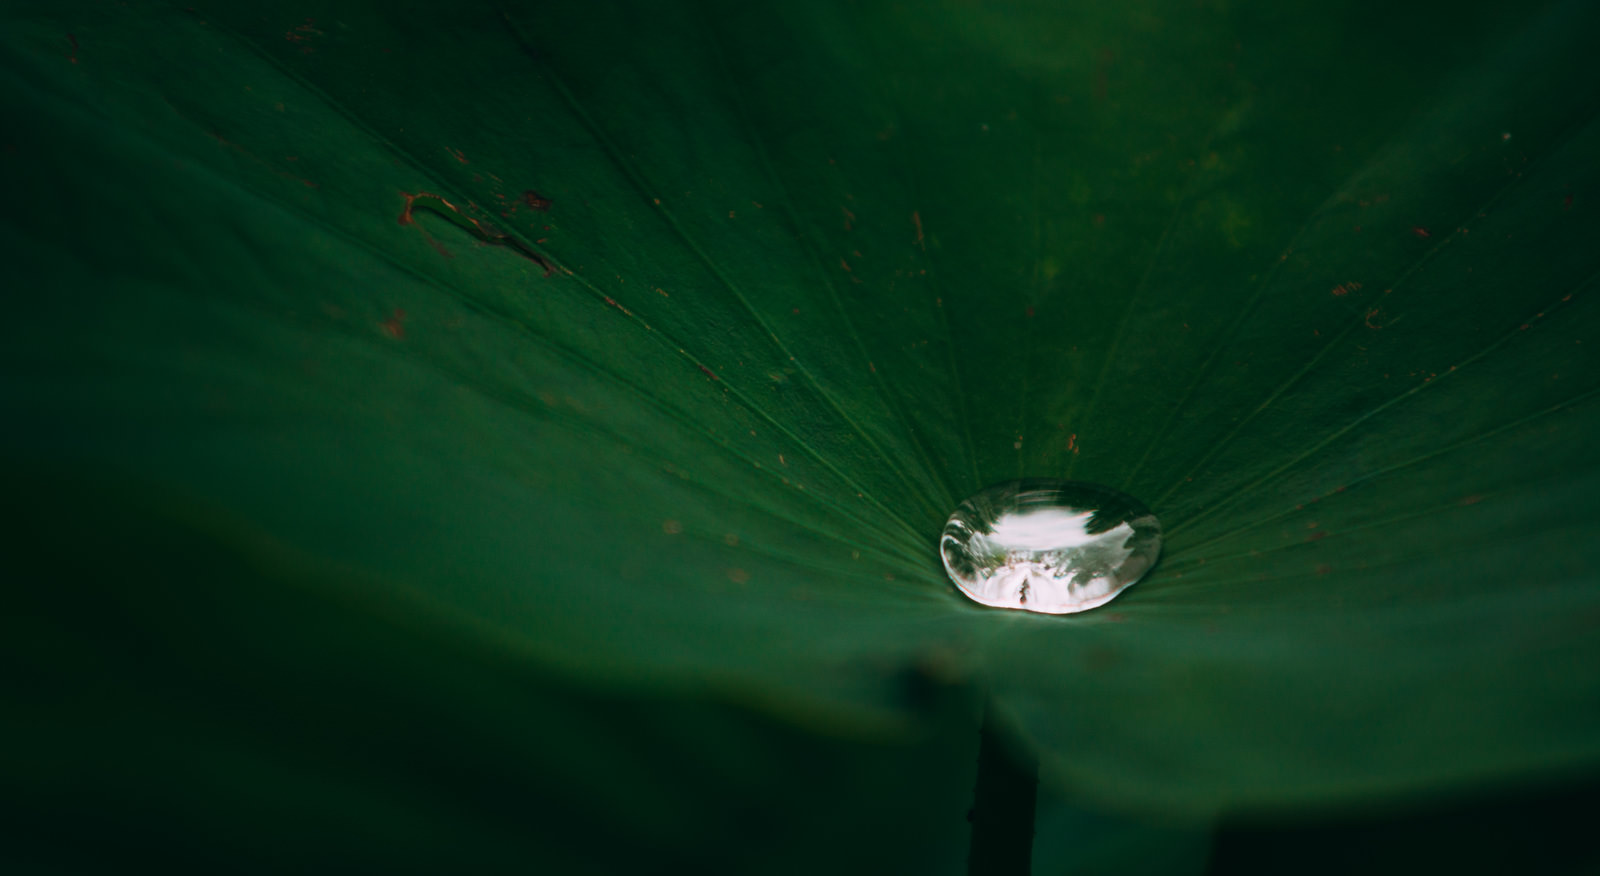 「ハスの葉の中心で輝く水」の写真